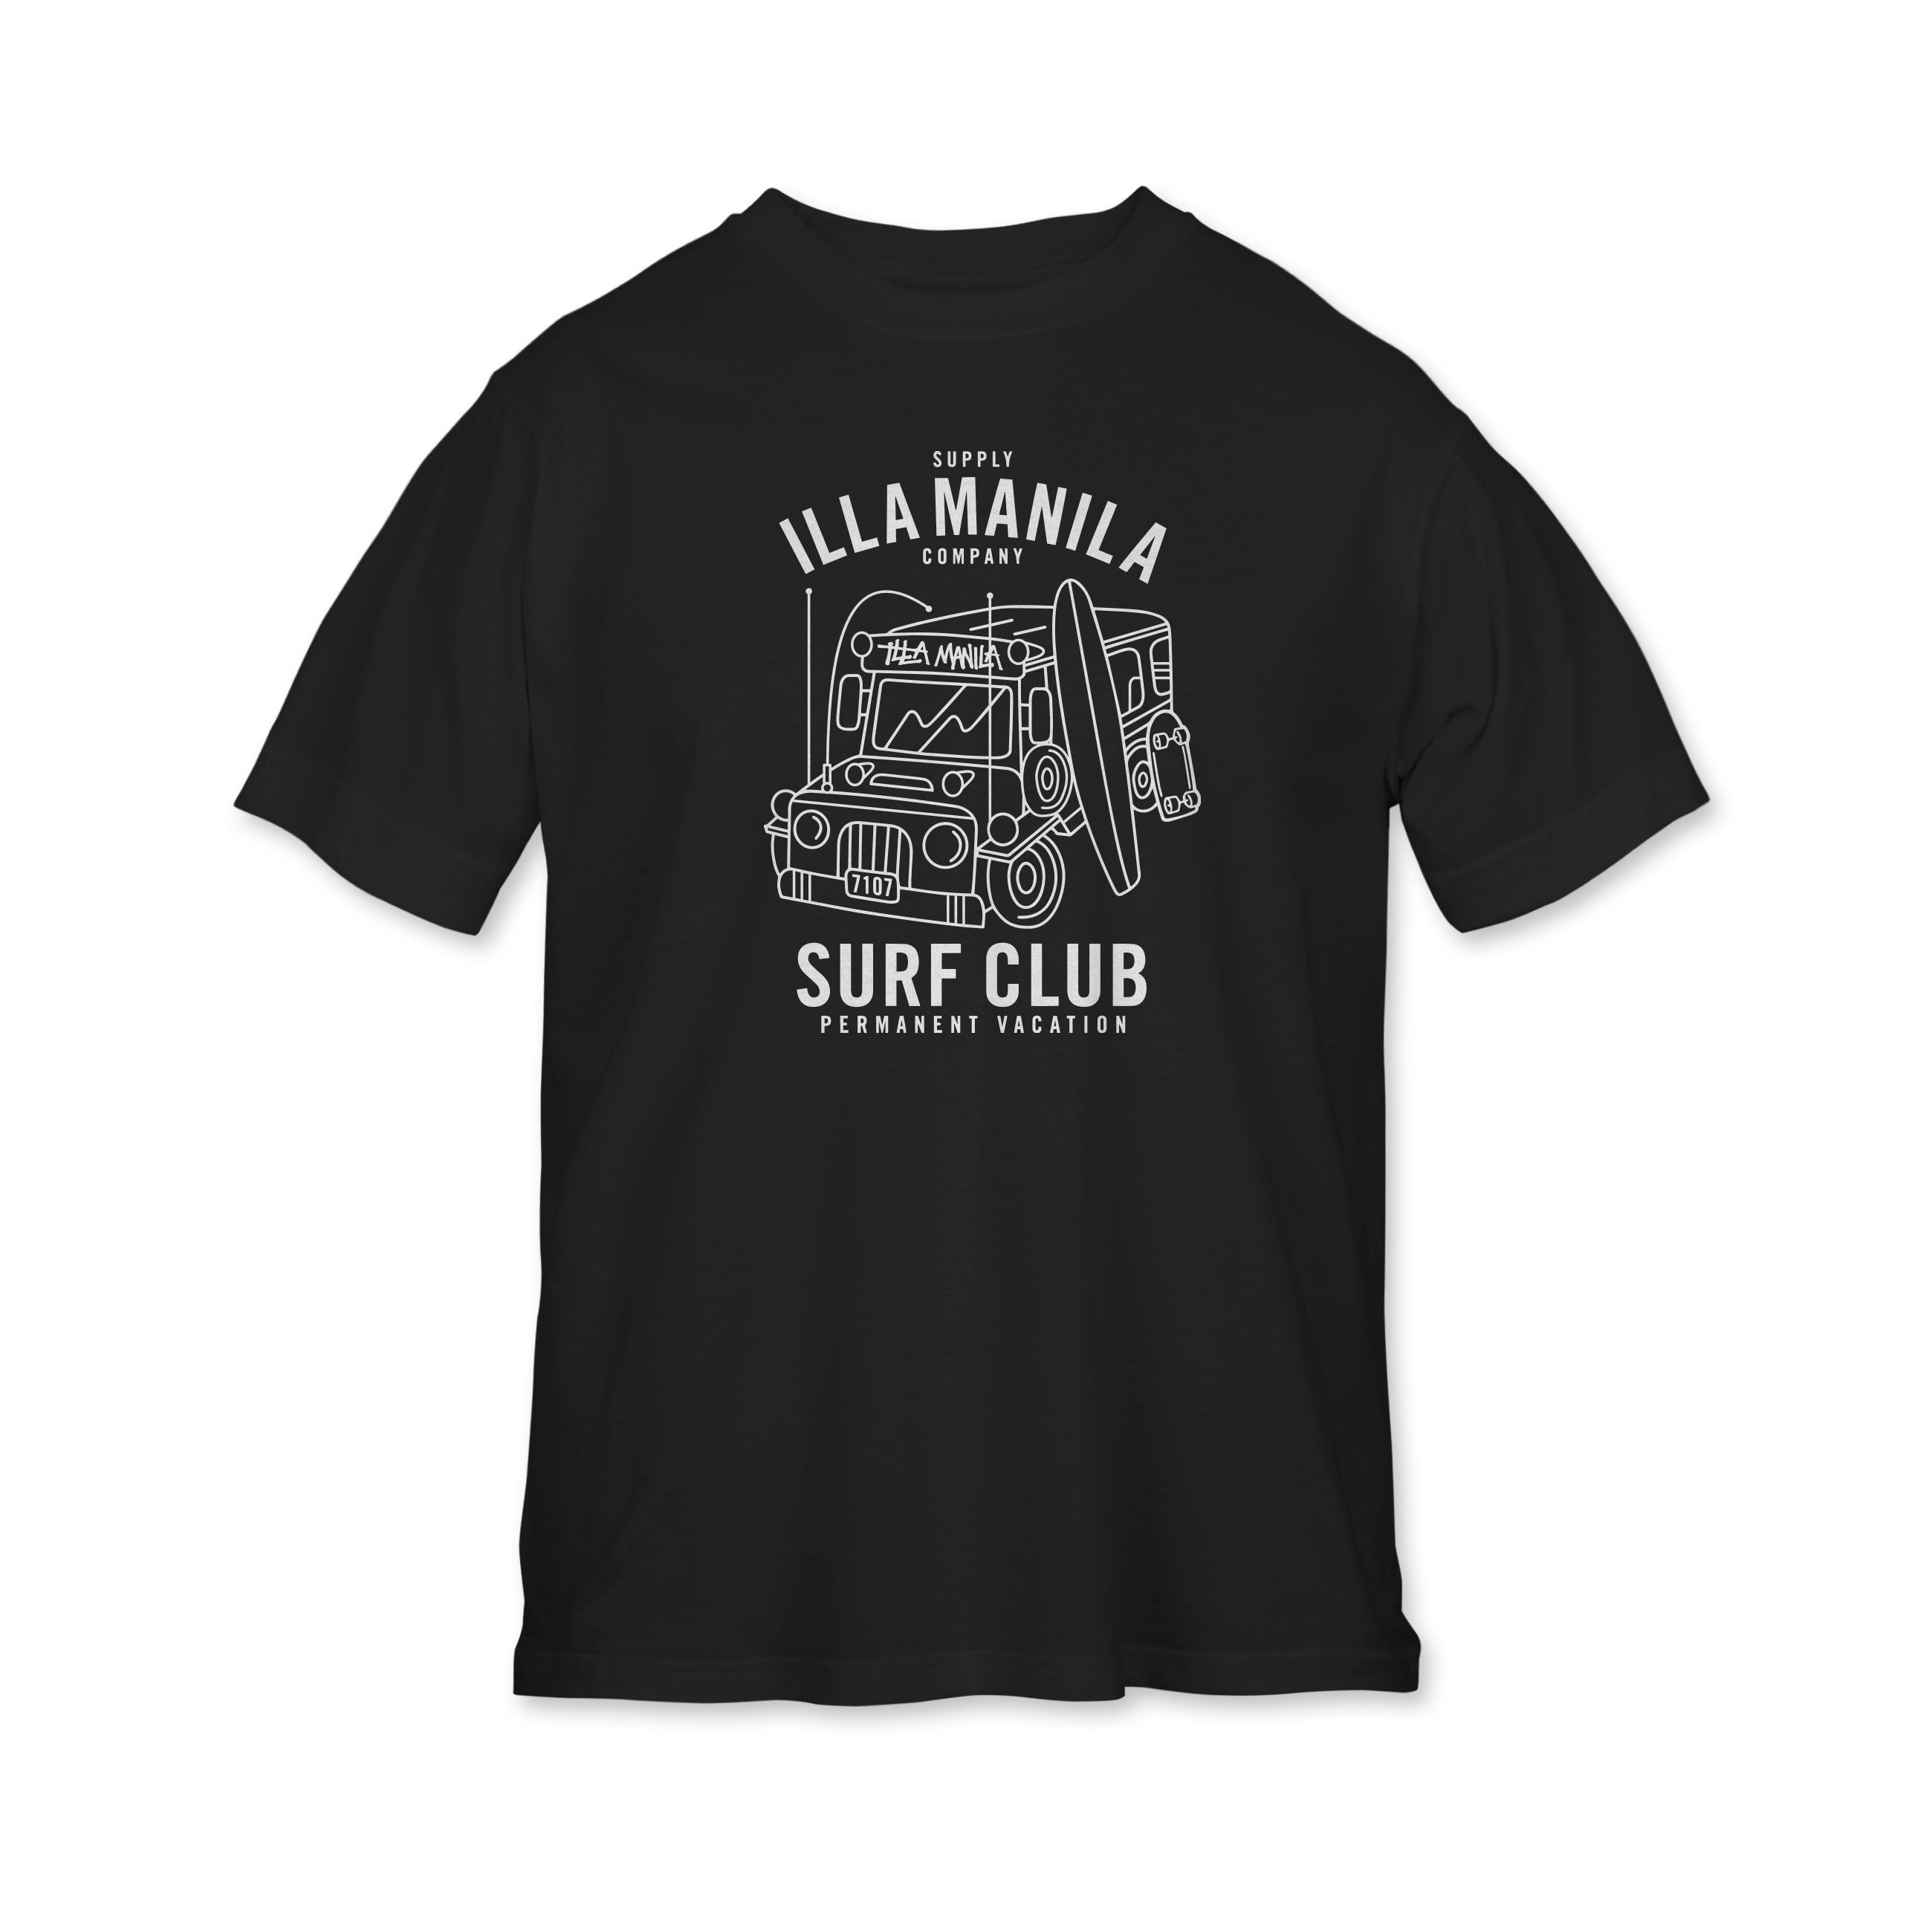 Surf Club T-shirt - Youth - Black